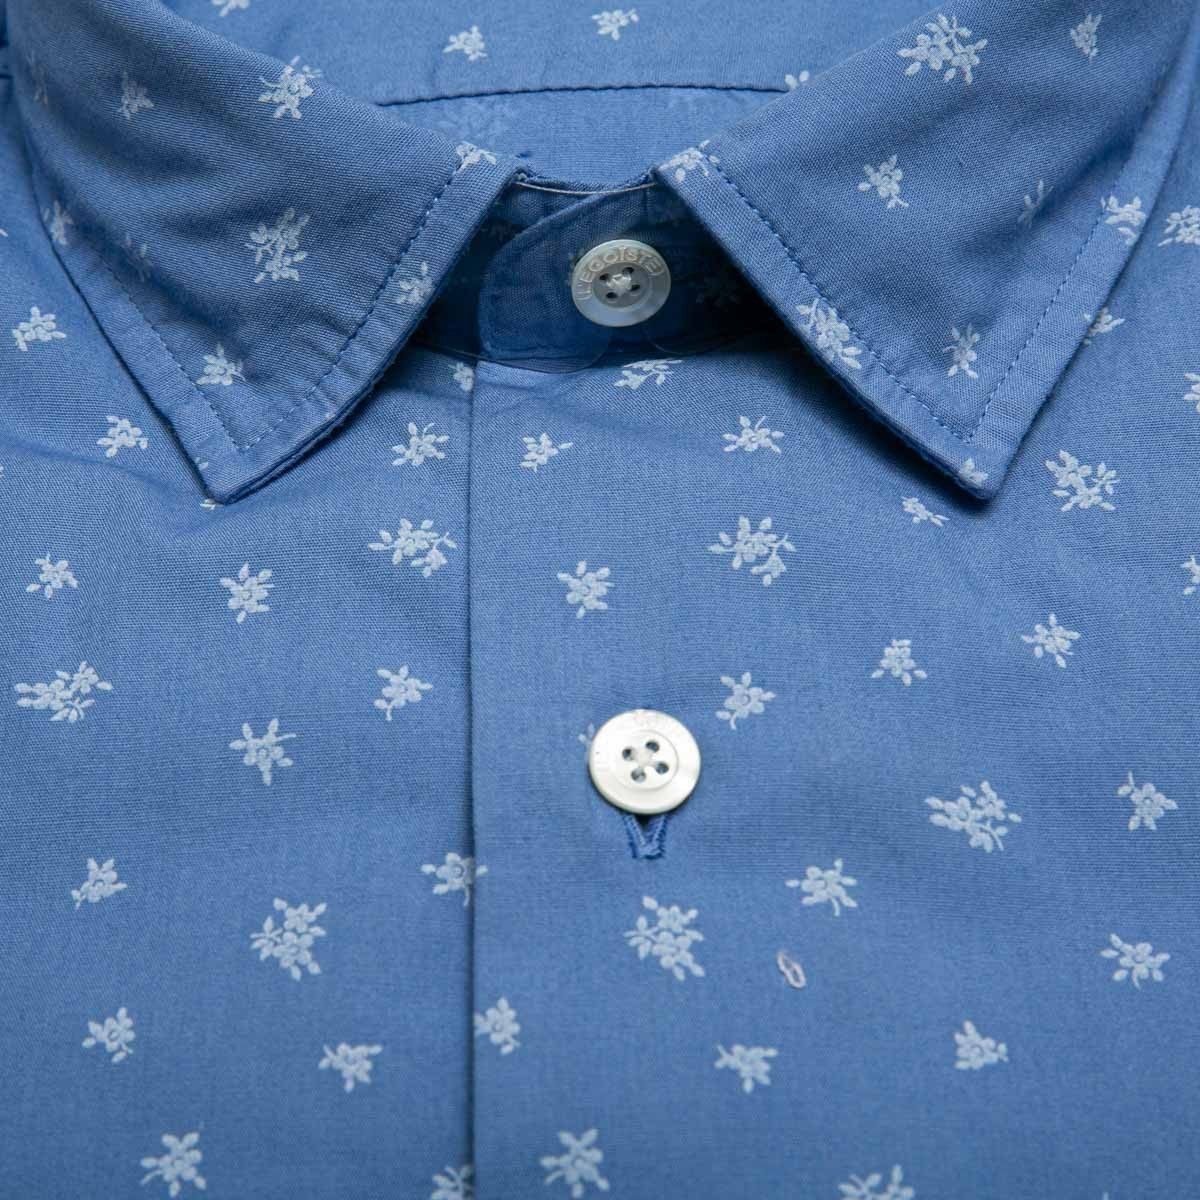 chemise-en-coton-bleue-motifs-a-fleurs-manches-longues-pour-homme-detail-tissu